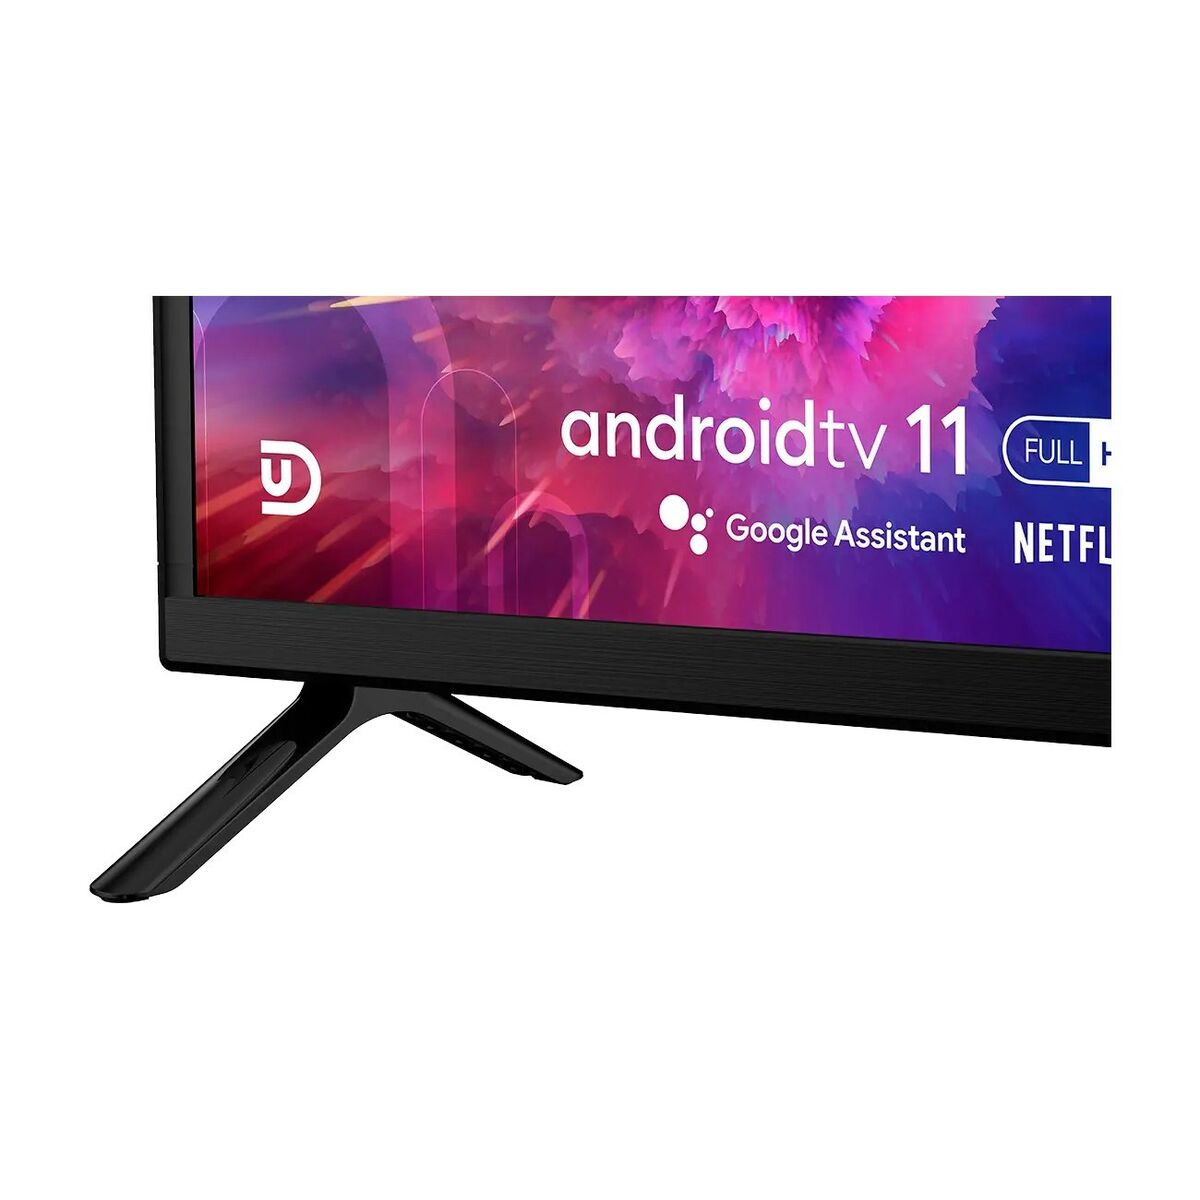 Smart TV UD 40F5210 Full HD 40" HDR D-LED